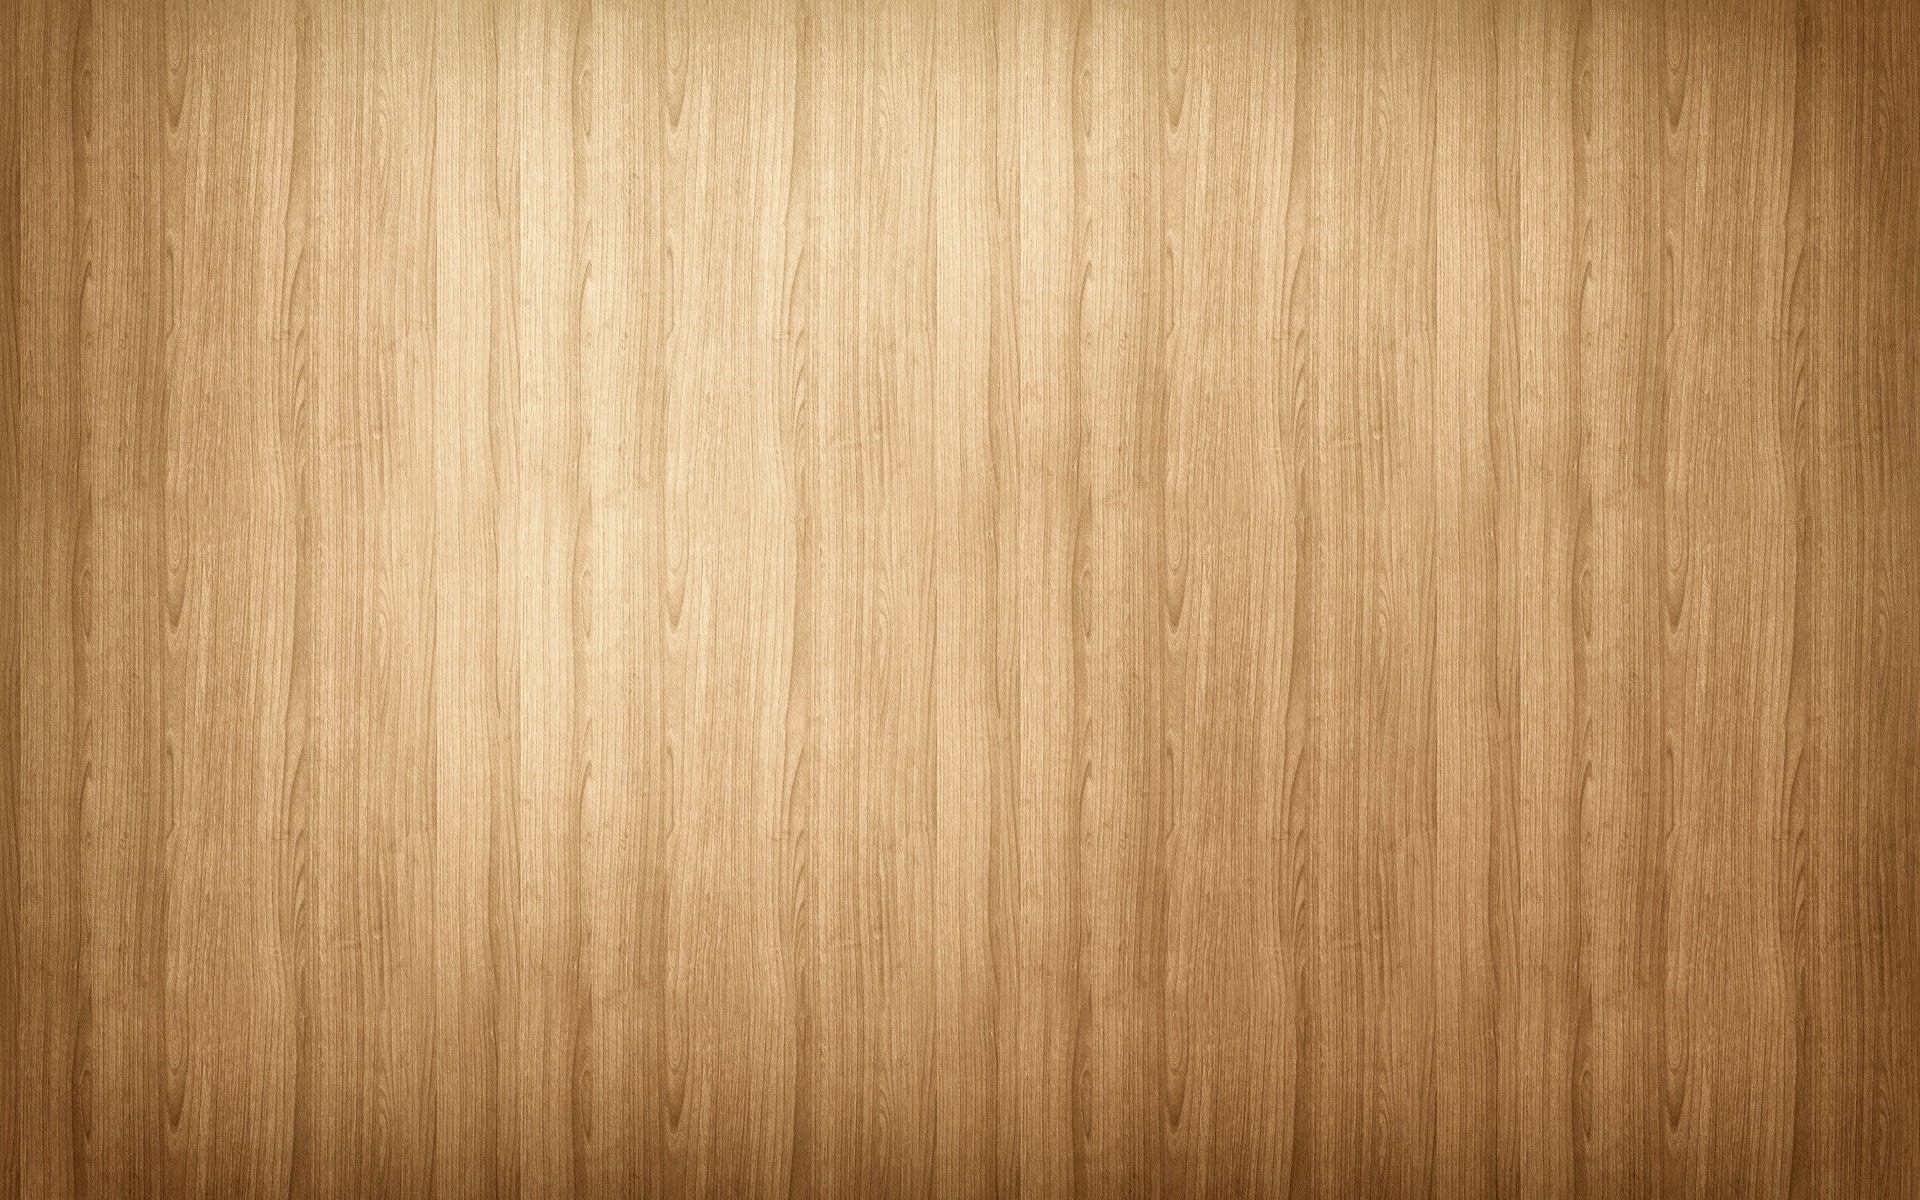 Tải xuống miễn phí Light Wood Wallpaper Background HD HD để tạo một không gian sống hoàn hảo và độc đáo. Với nền gỗ 4K tinh tế và chi tiết, bạn sẽ cảm thấy như lạc vào một khu rừng yên tĩnh. Hãy cùng trải nghiệm cảm giác thư giãn và thoải mái với nền gỗ 4K.